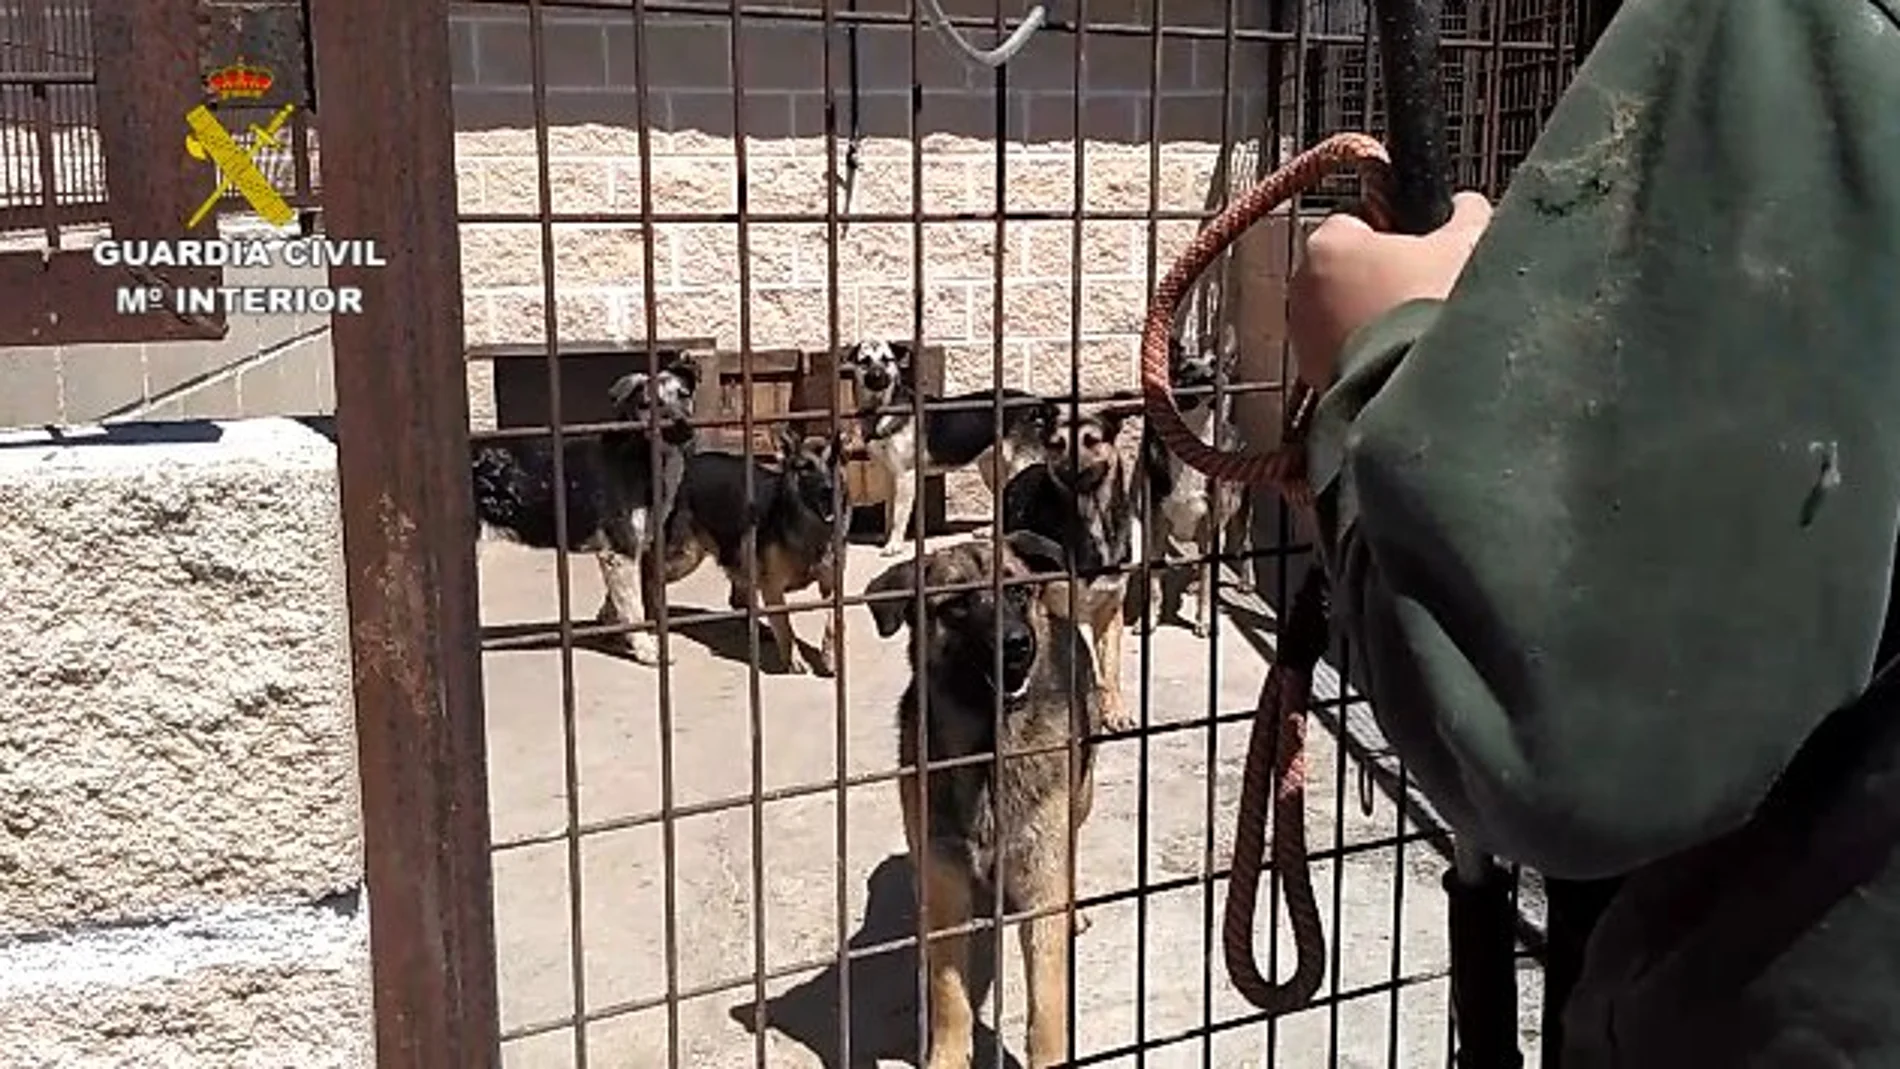 Intervienen una instalación con 59 perros en pésimas condiciones higiénico-sanitarias